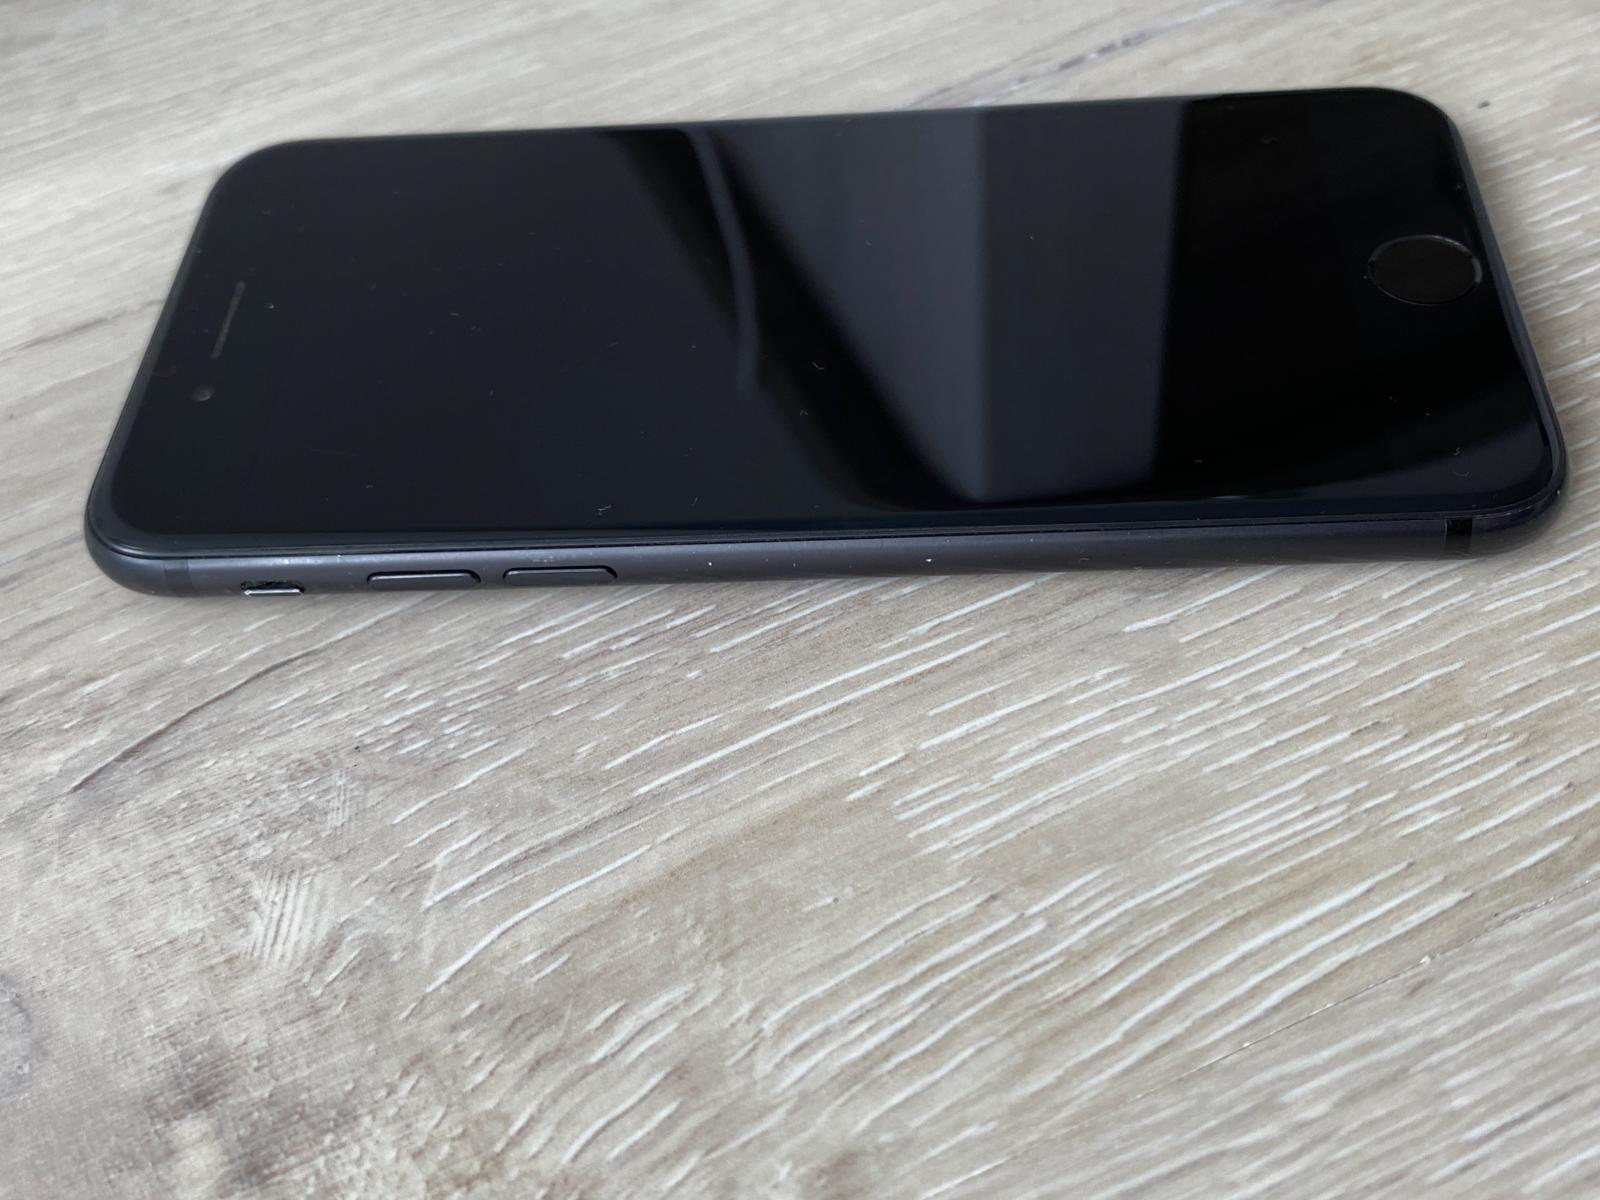 iPhone 7 32GB Černý - Mobily a chytrá elektronika